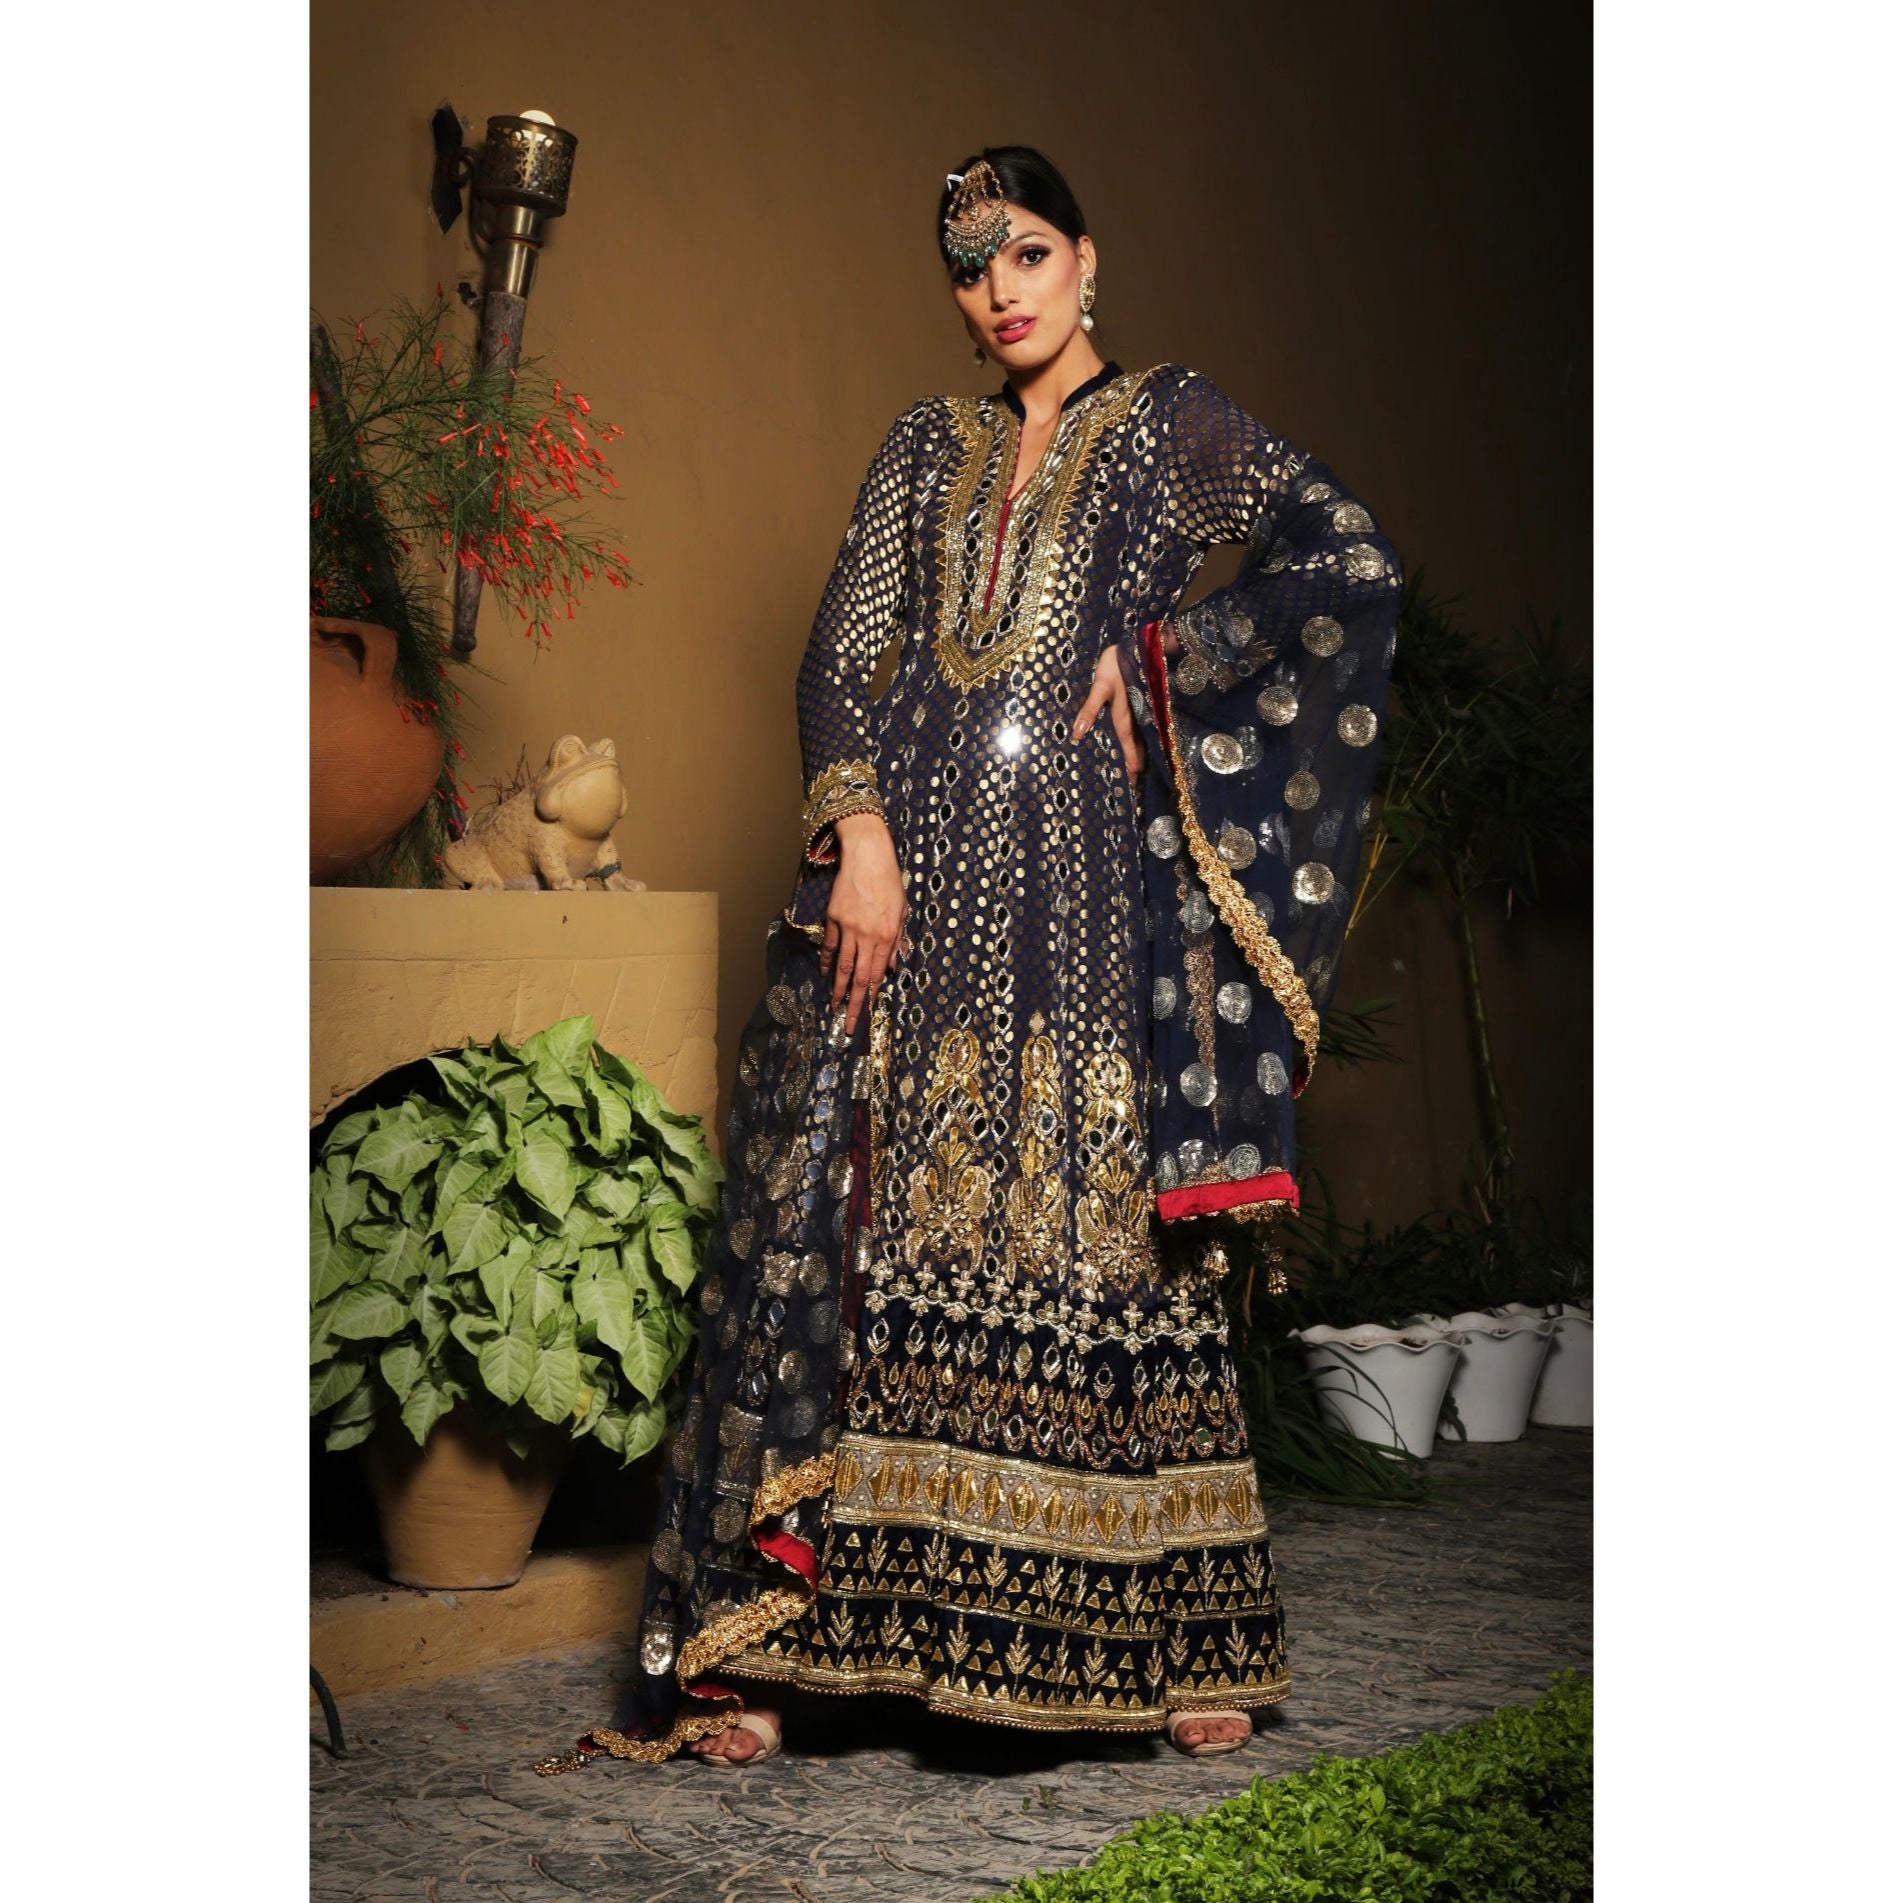 Black Embroidered Anarkali - Indian Designer Bridal Wedding Outfit